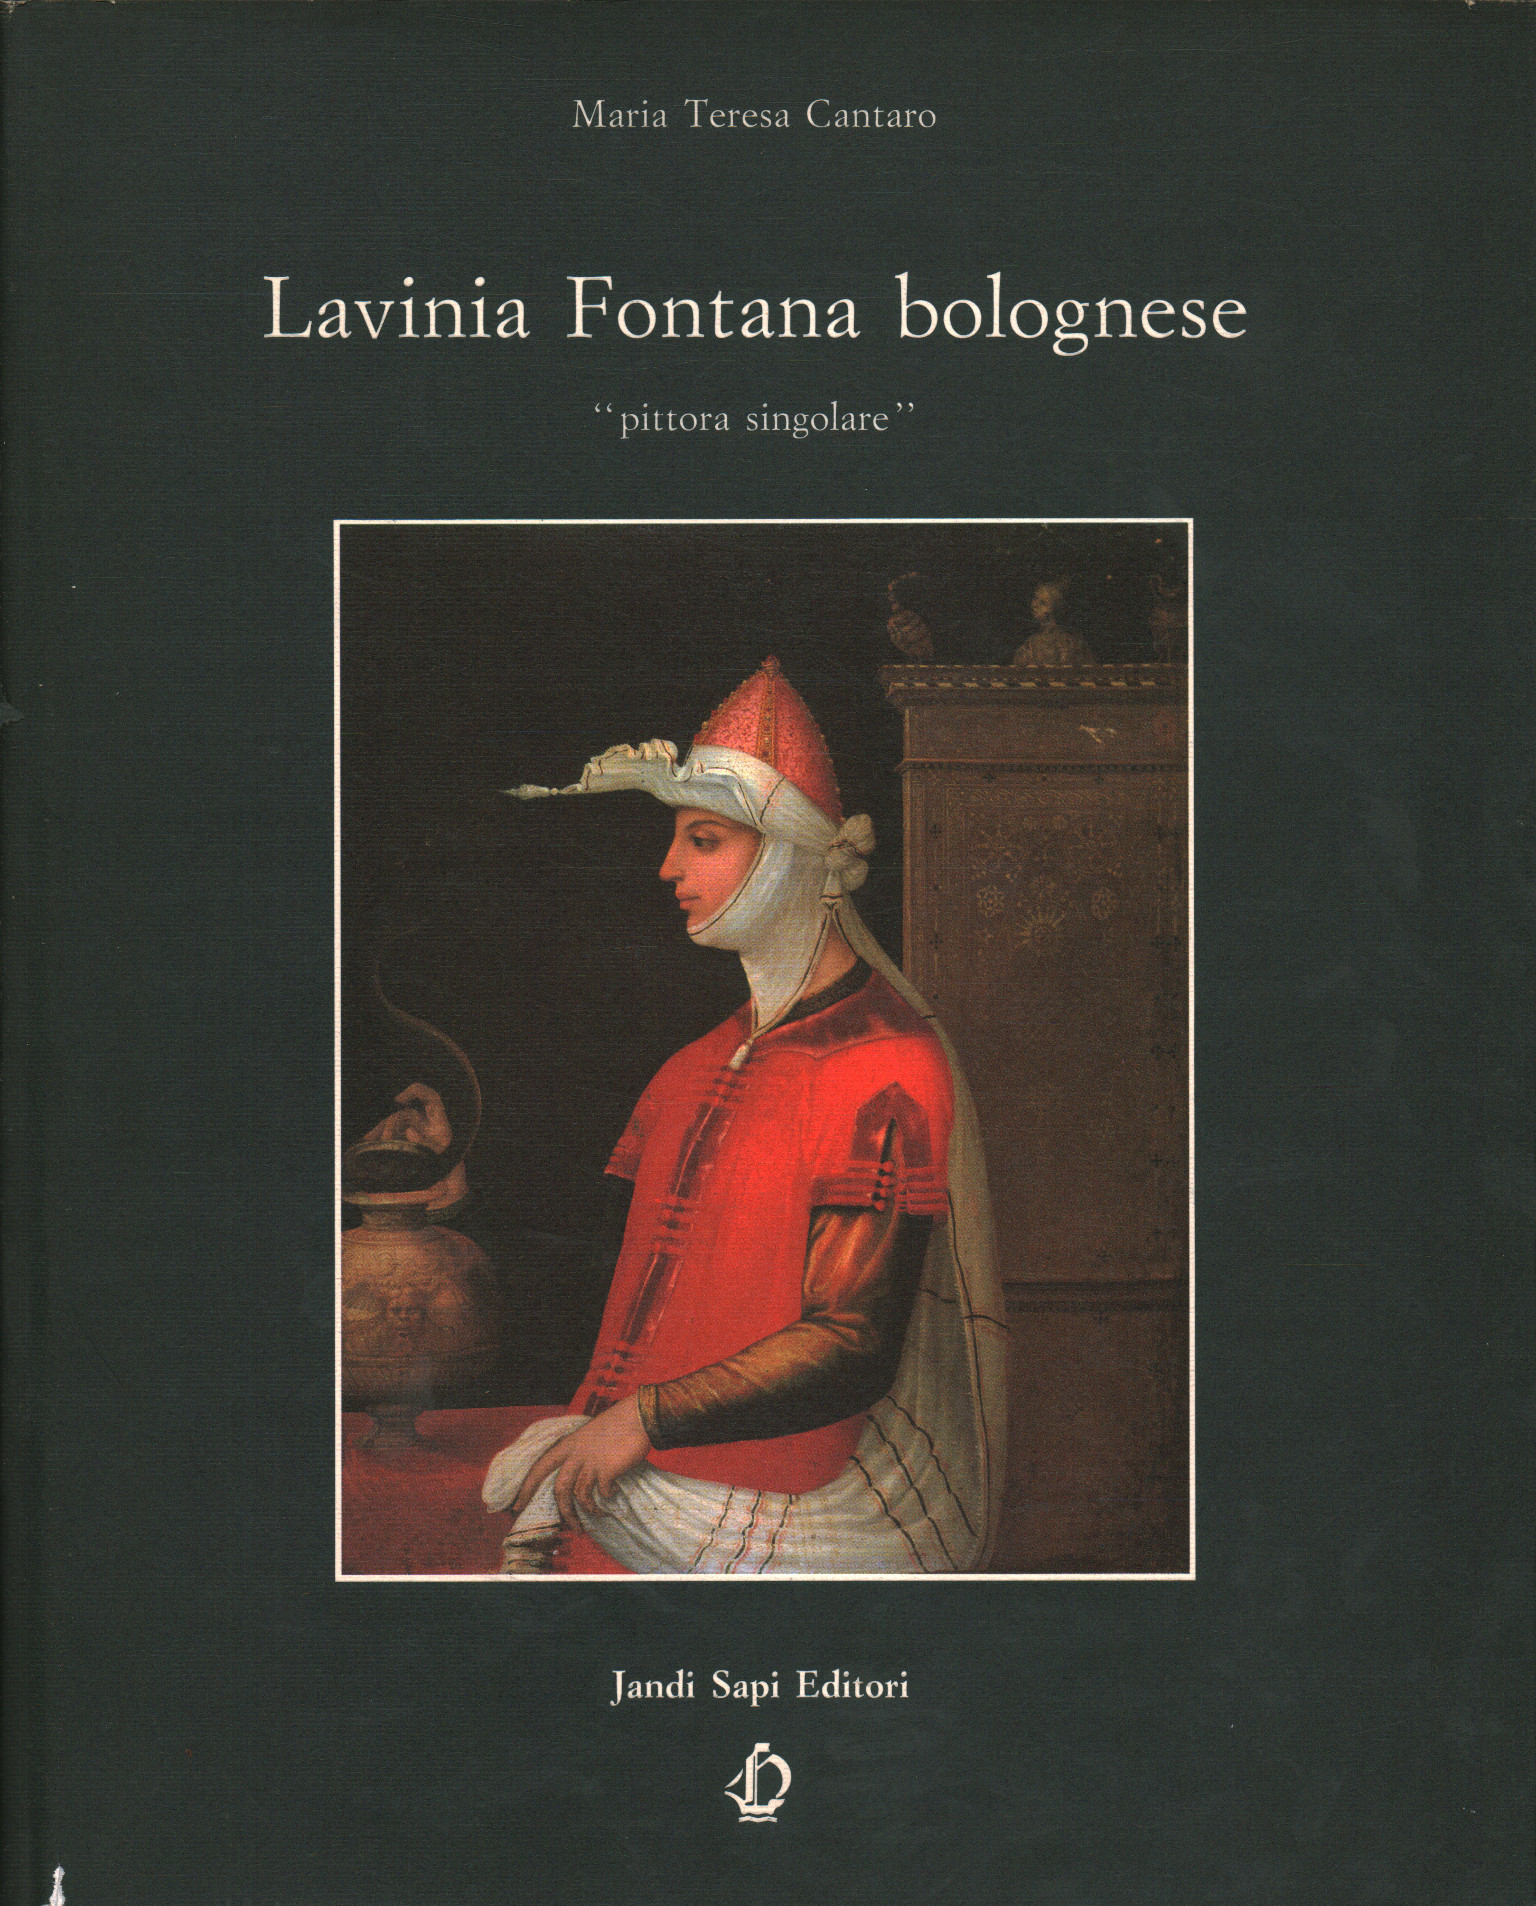 Lavinia Fontana from Bologna